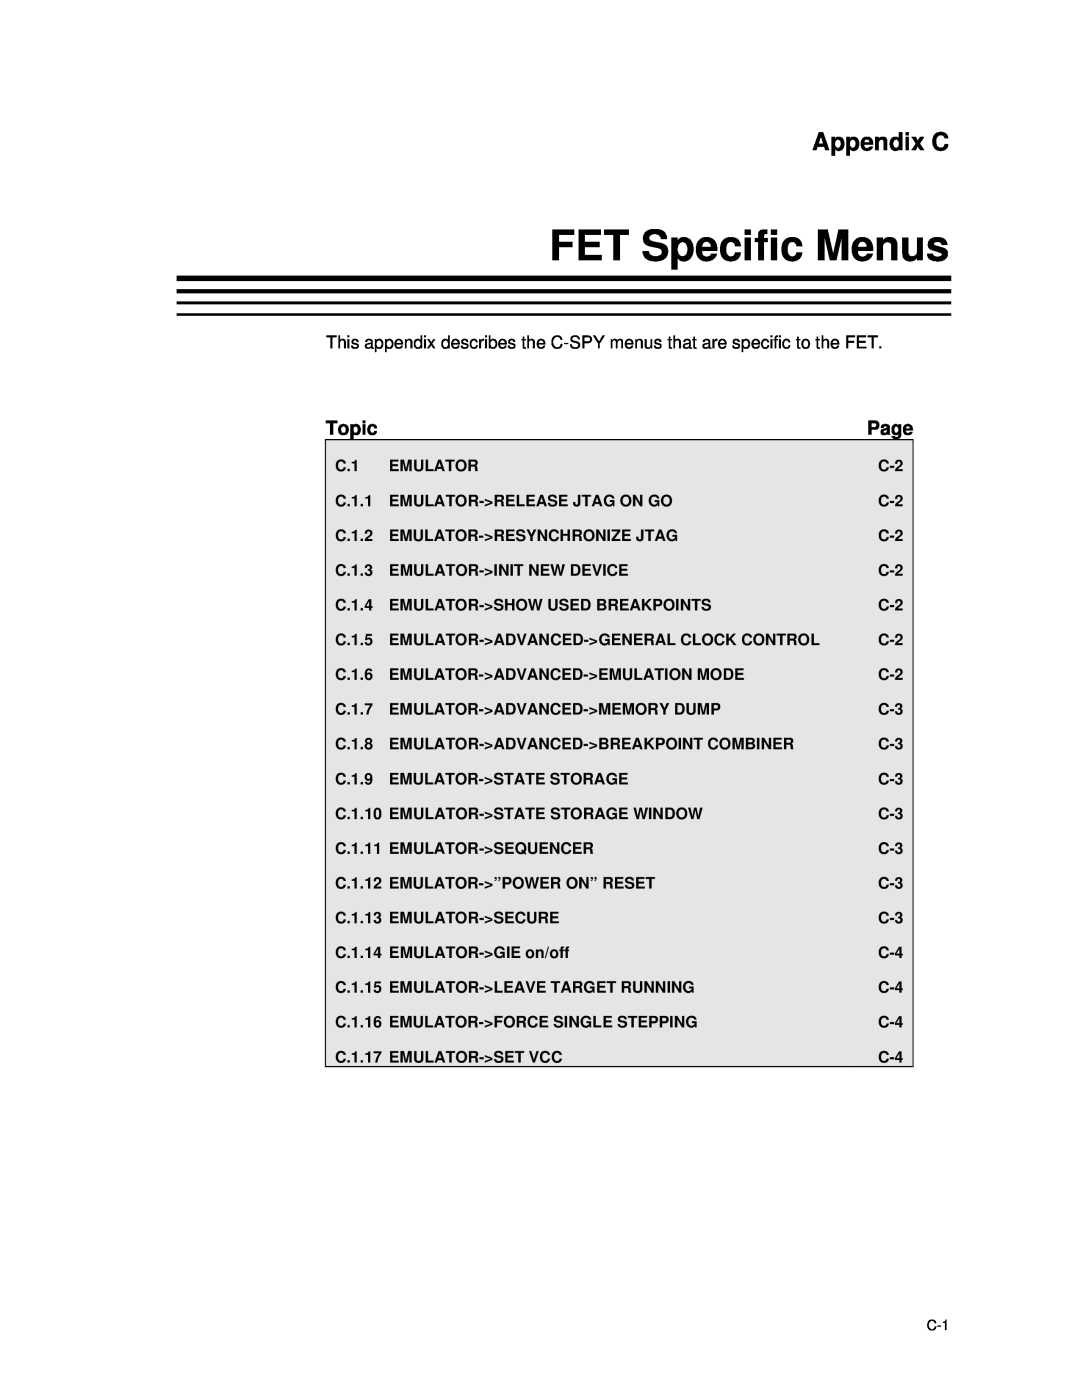 Texas Instruments MSP-FET430 manual FET Specific Menus, Appendix C 